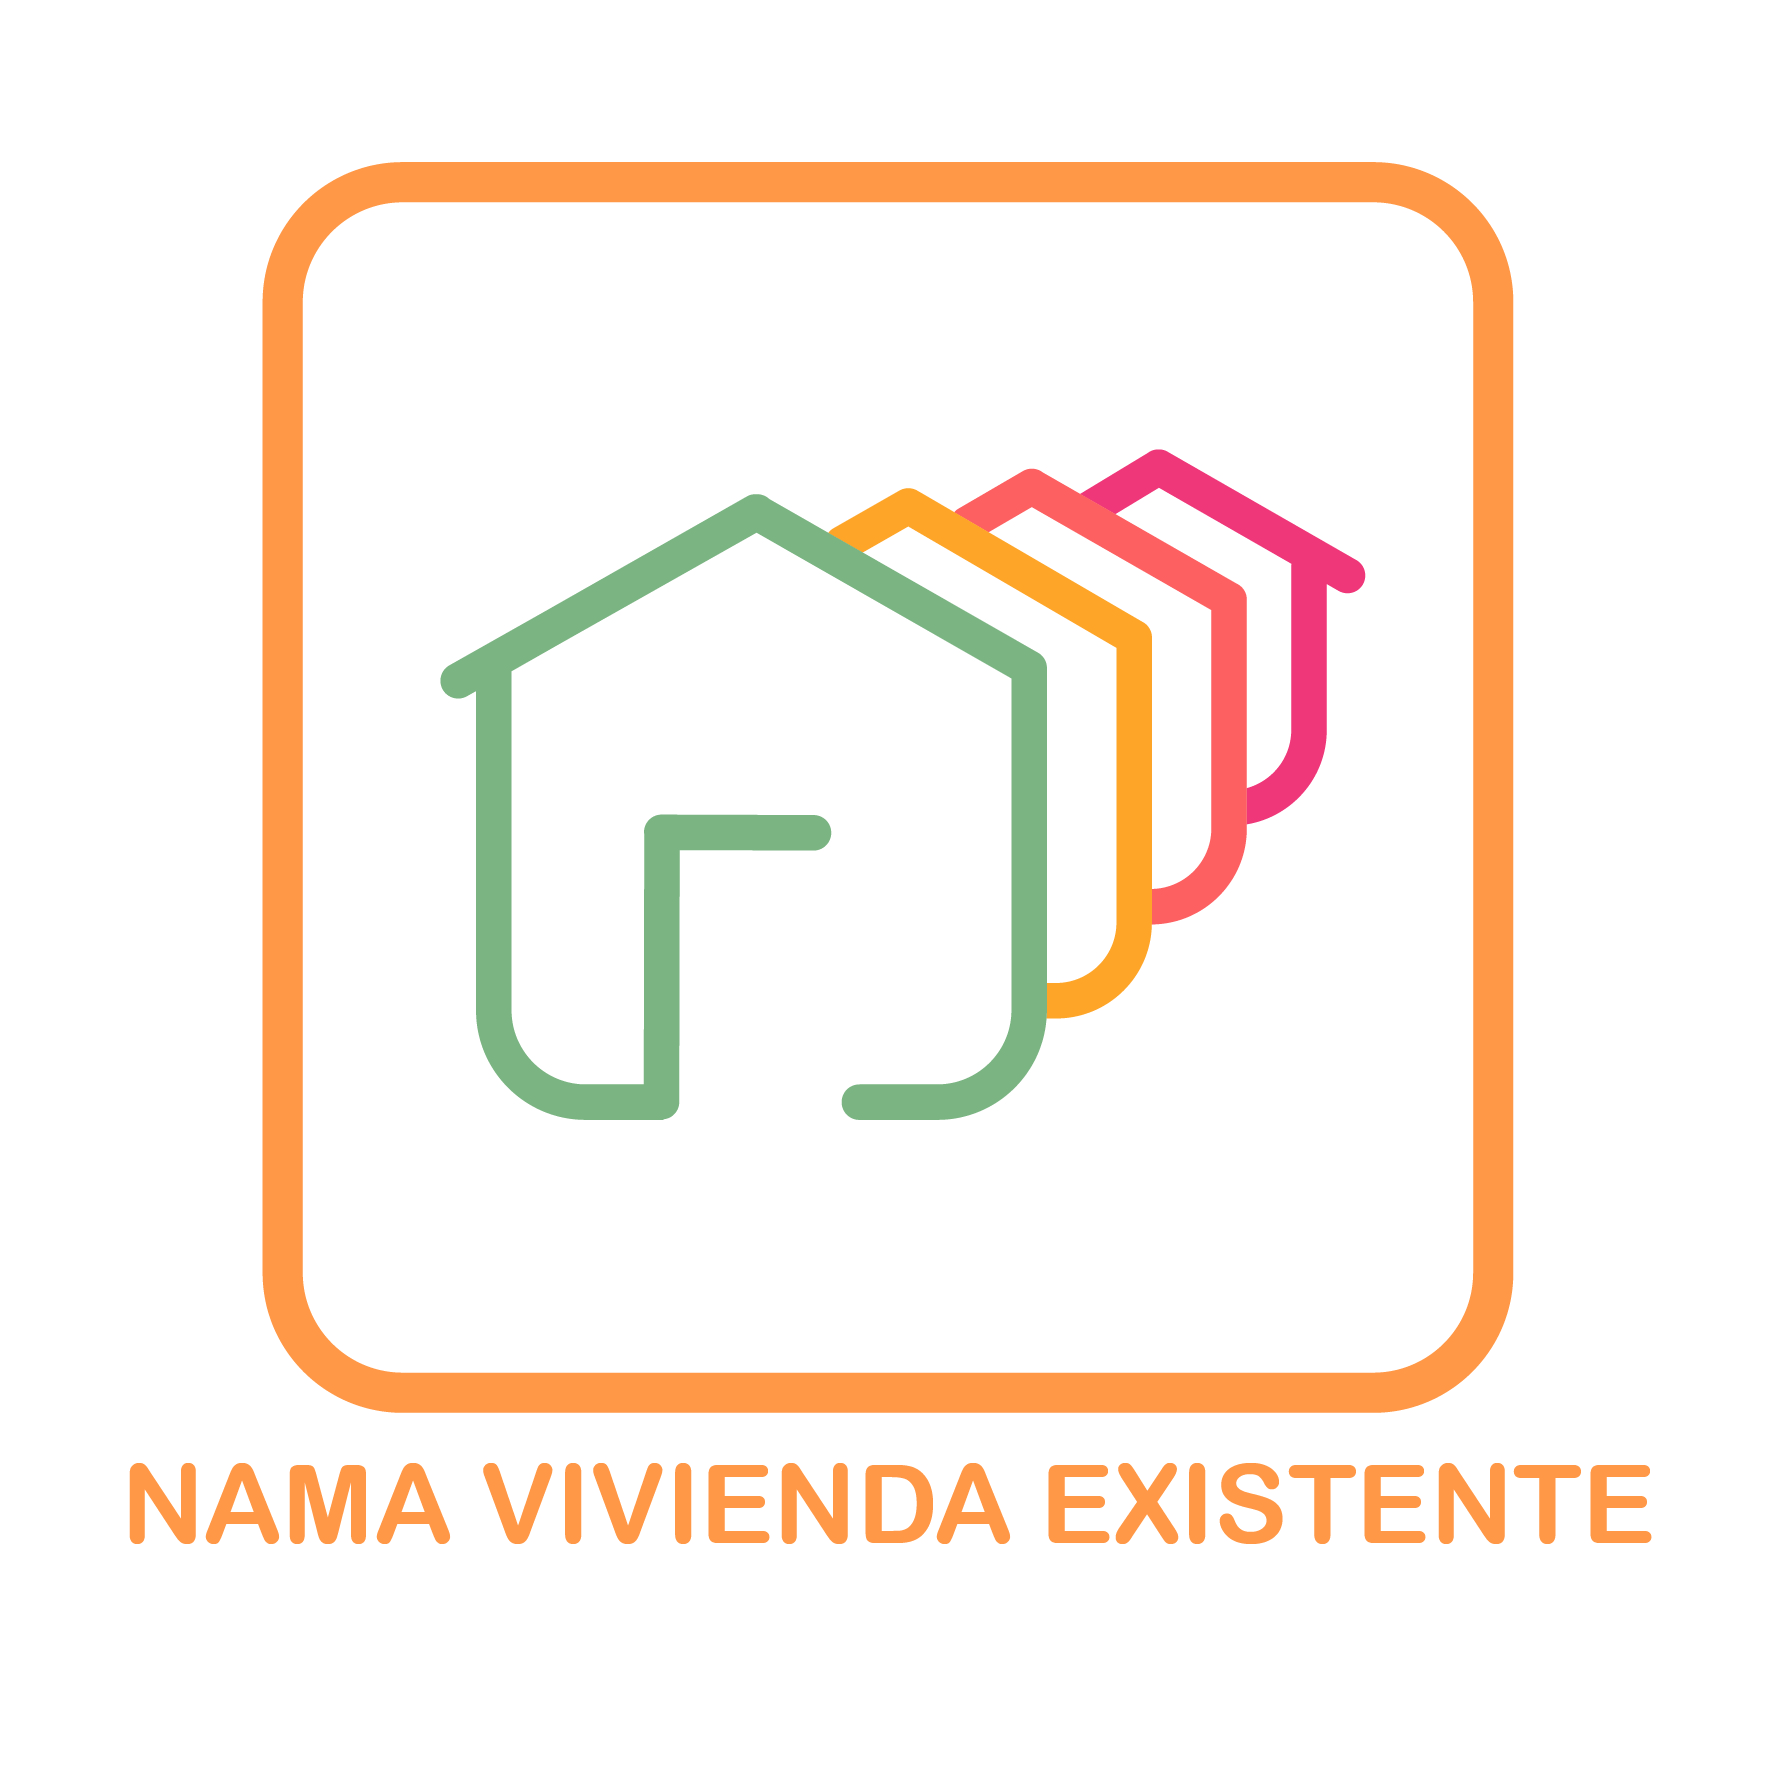 Icon of 02 NAMA Vivienda Existente